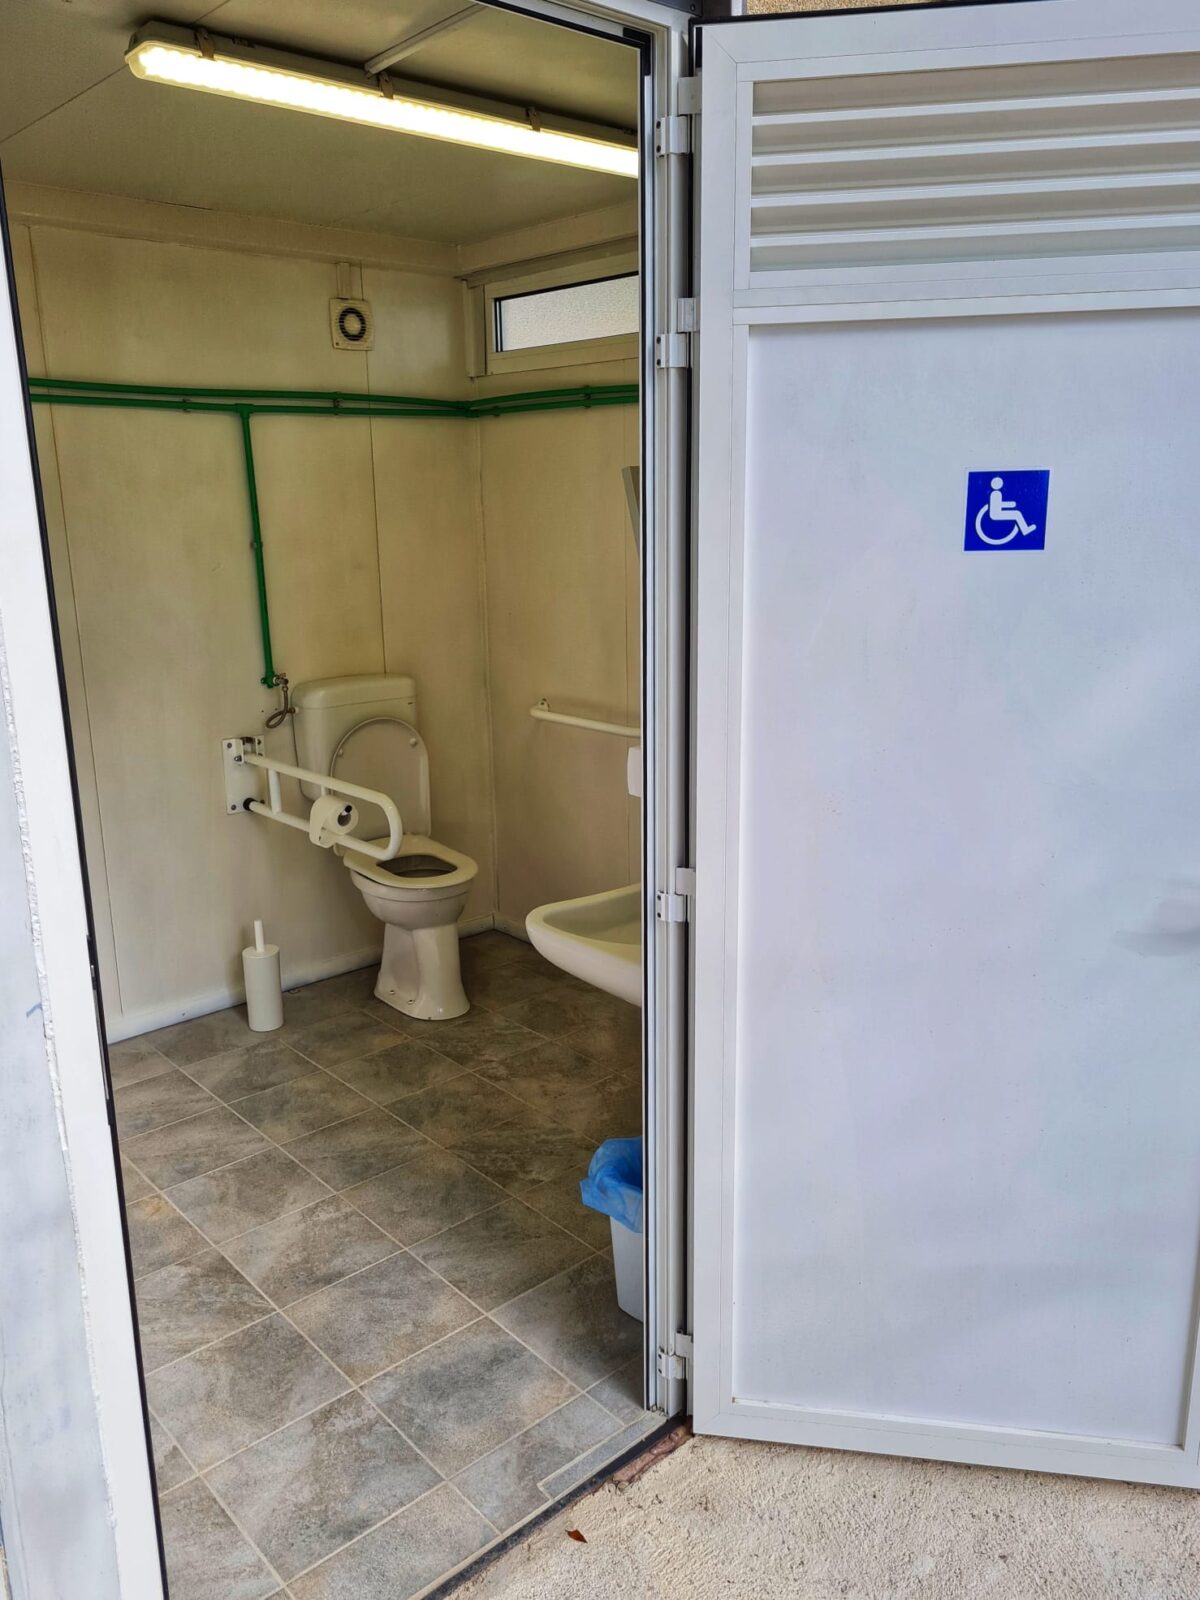 icici wc sanitarni svor (1)